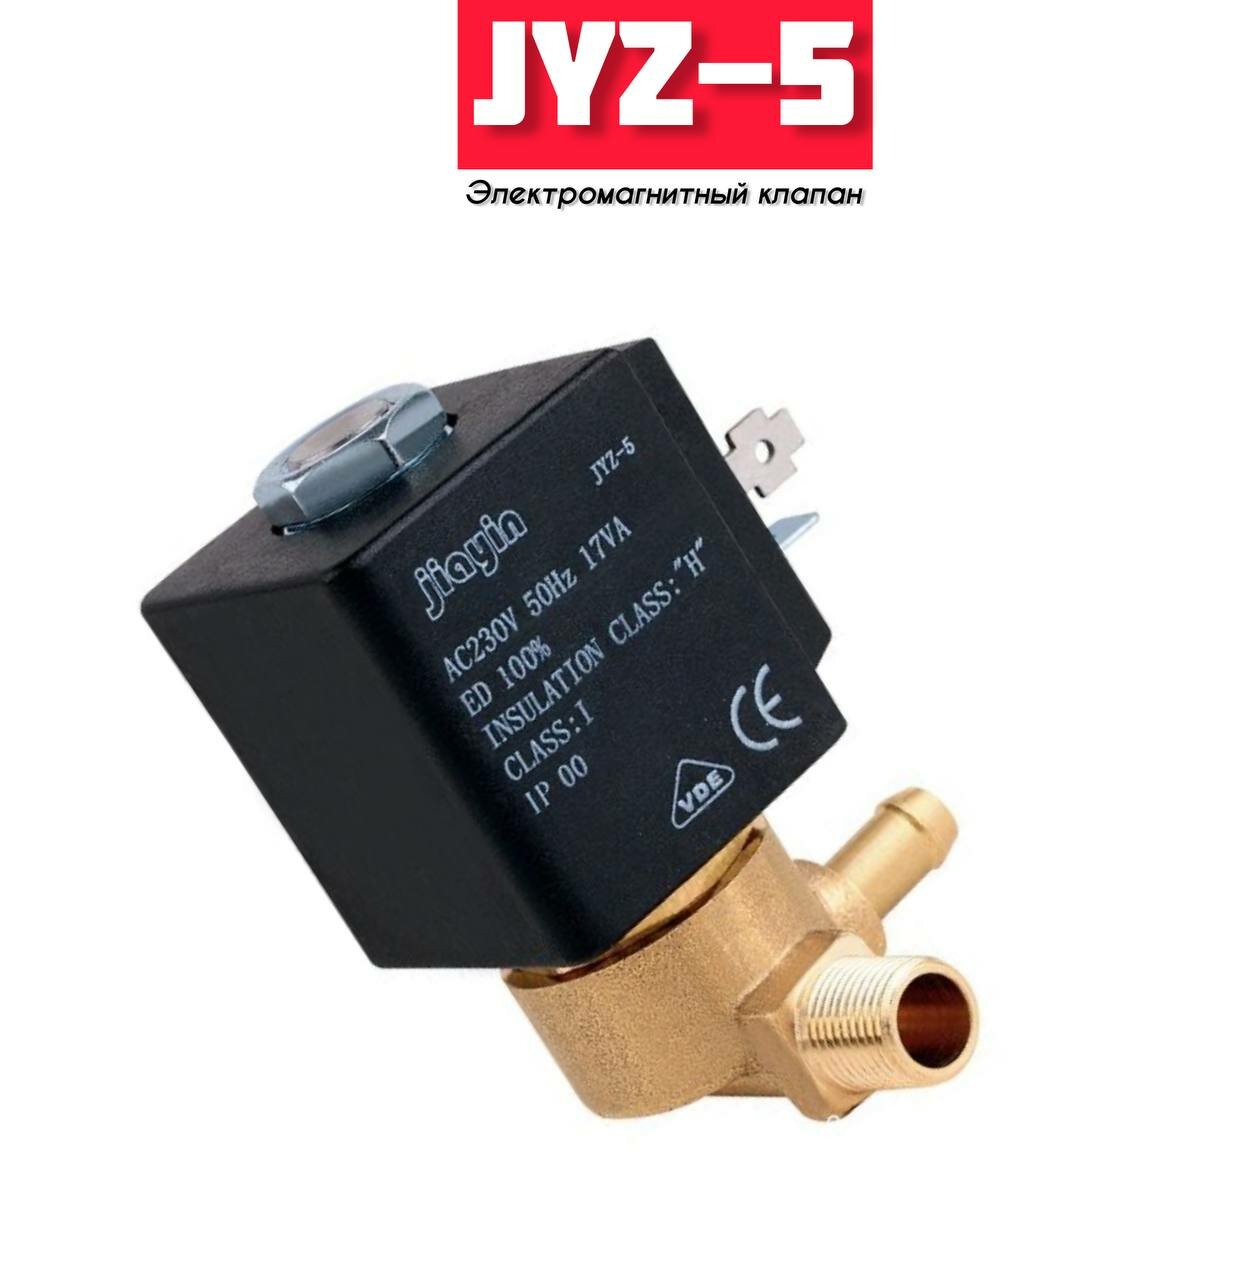 Клапан электромагнитный JIAYIN JYZ-5 17VA (CEME 688) для парогенератора